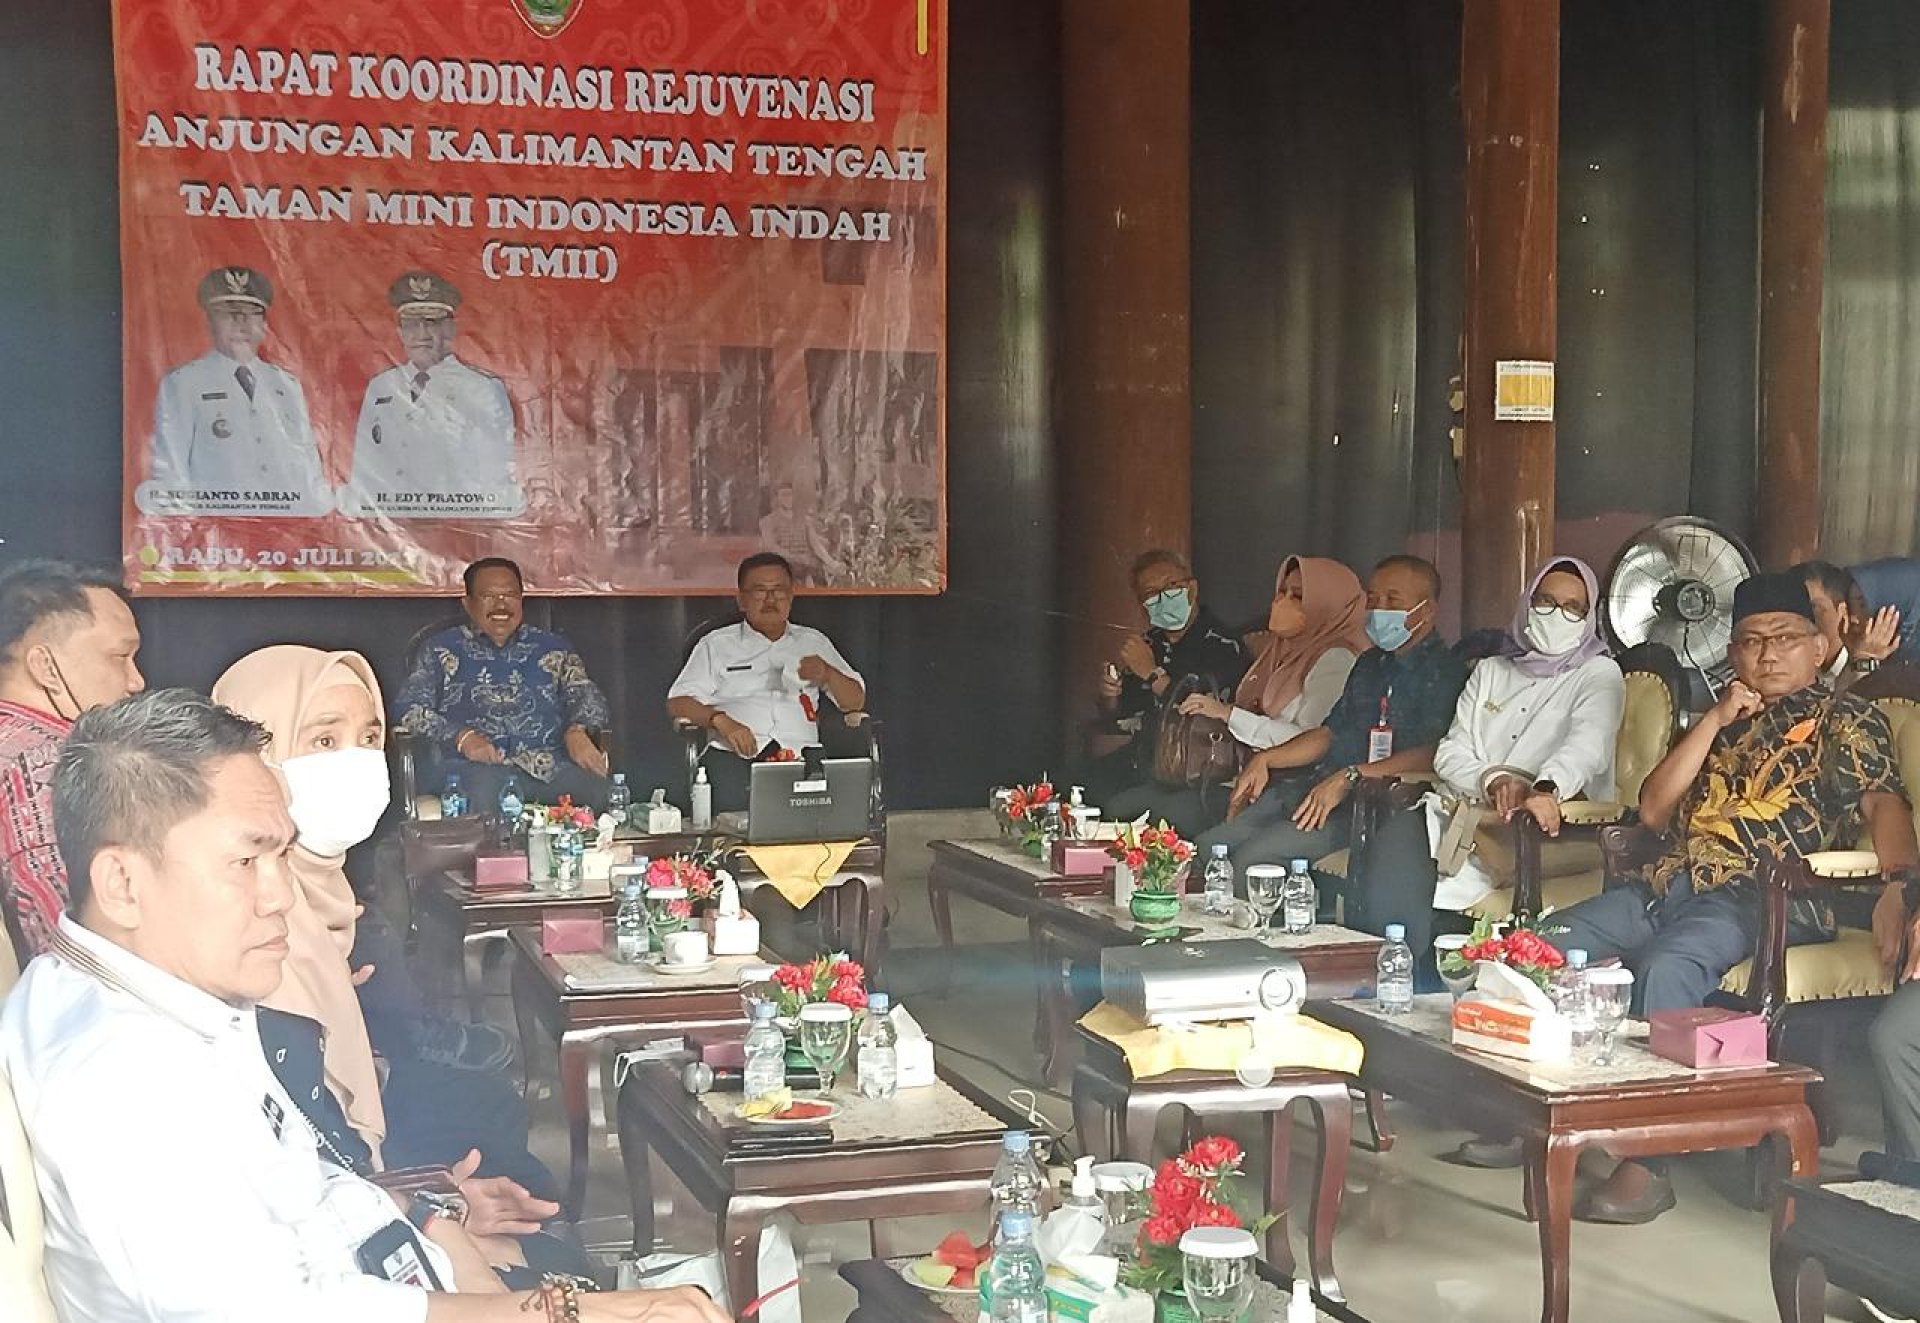 Dukung G20, Kalimantan Tengah Siap Lakukan Rejuvenasi Anjungan di TMII